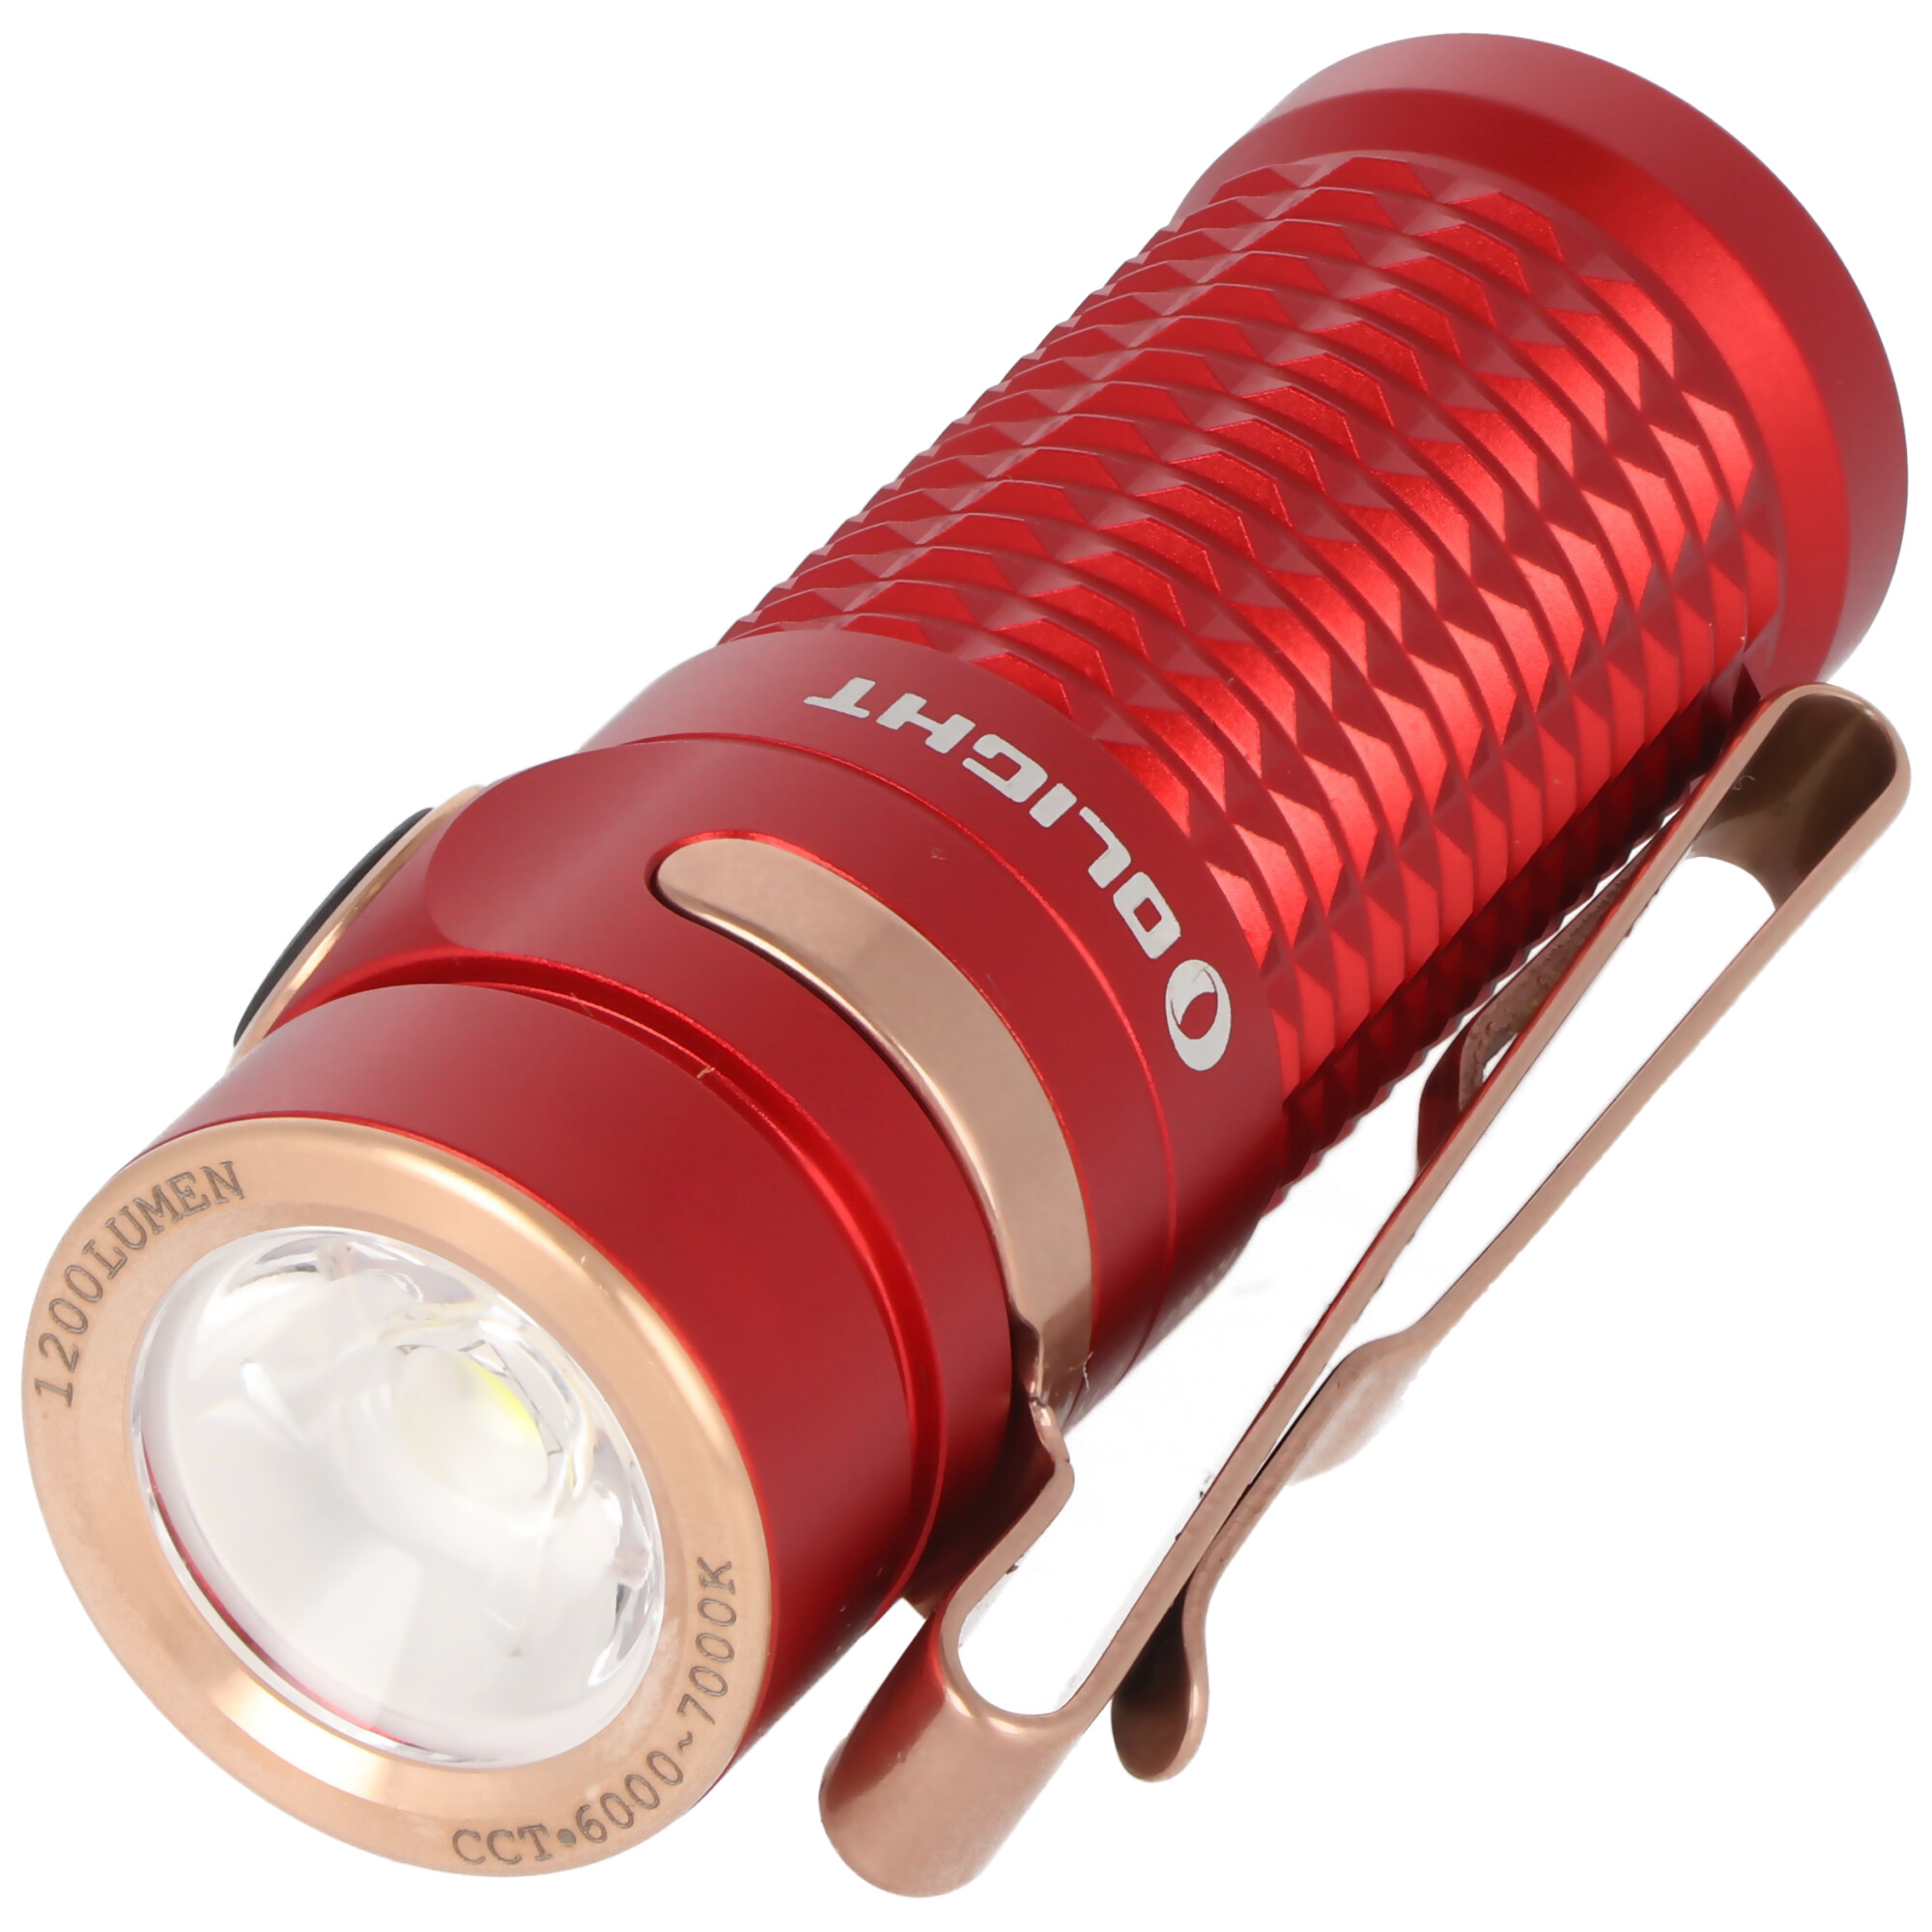 Olight Baton 3 LED-Taschenlampe, 1200 Lumen, wiederaufladbar, rutschfestes Texturdesign, inklusive IMR16340 3,7V 550mAh Akku und Ladekabel, rot